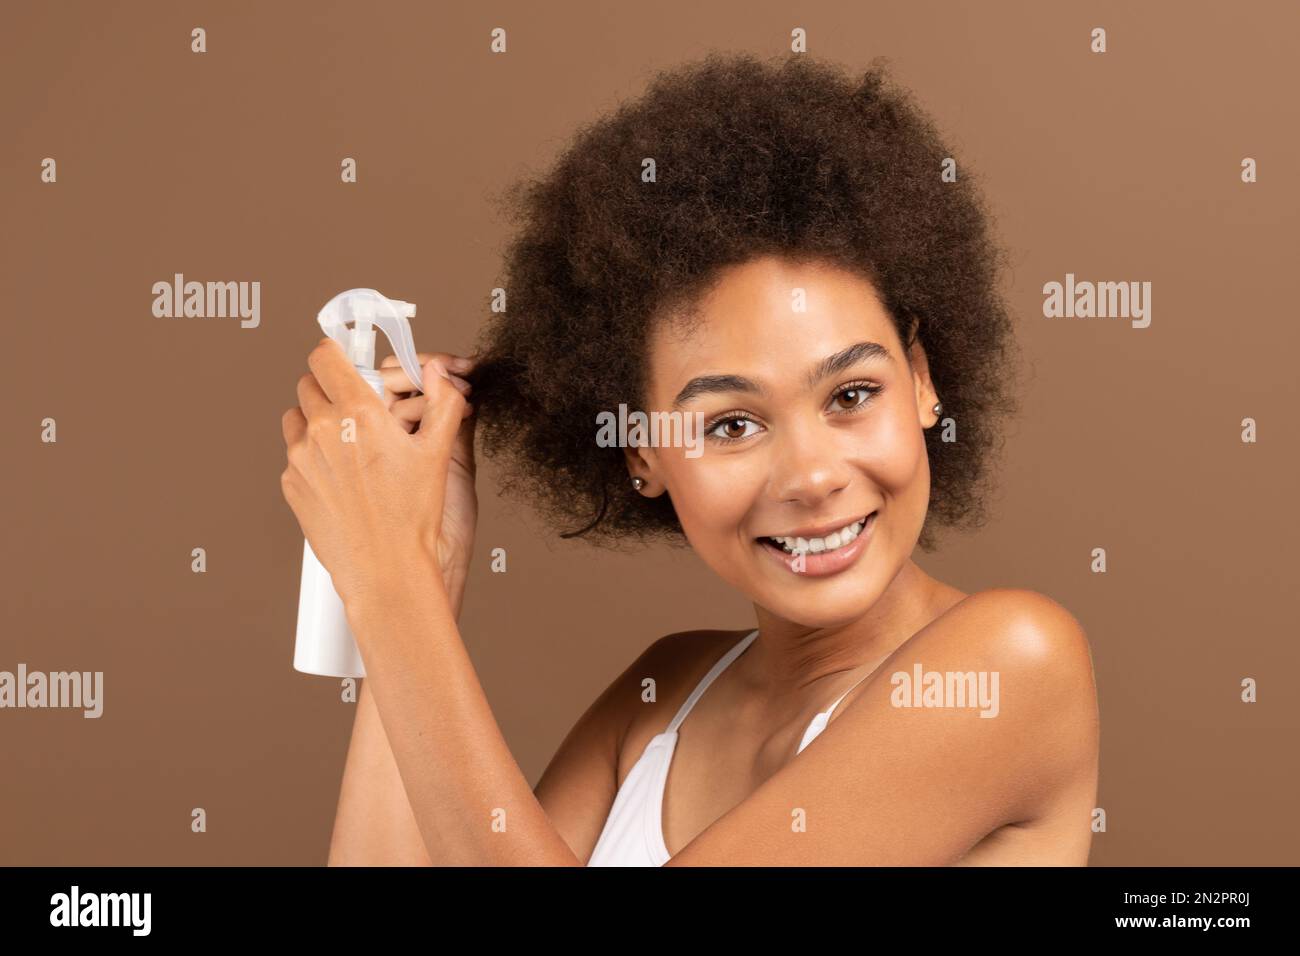 Souriante jeune afro-américaine curly femme avec une peau parfaite dans le haut blanc appliquant un spray sur ses cheveux Banque D'Images